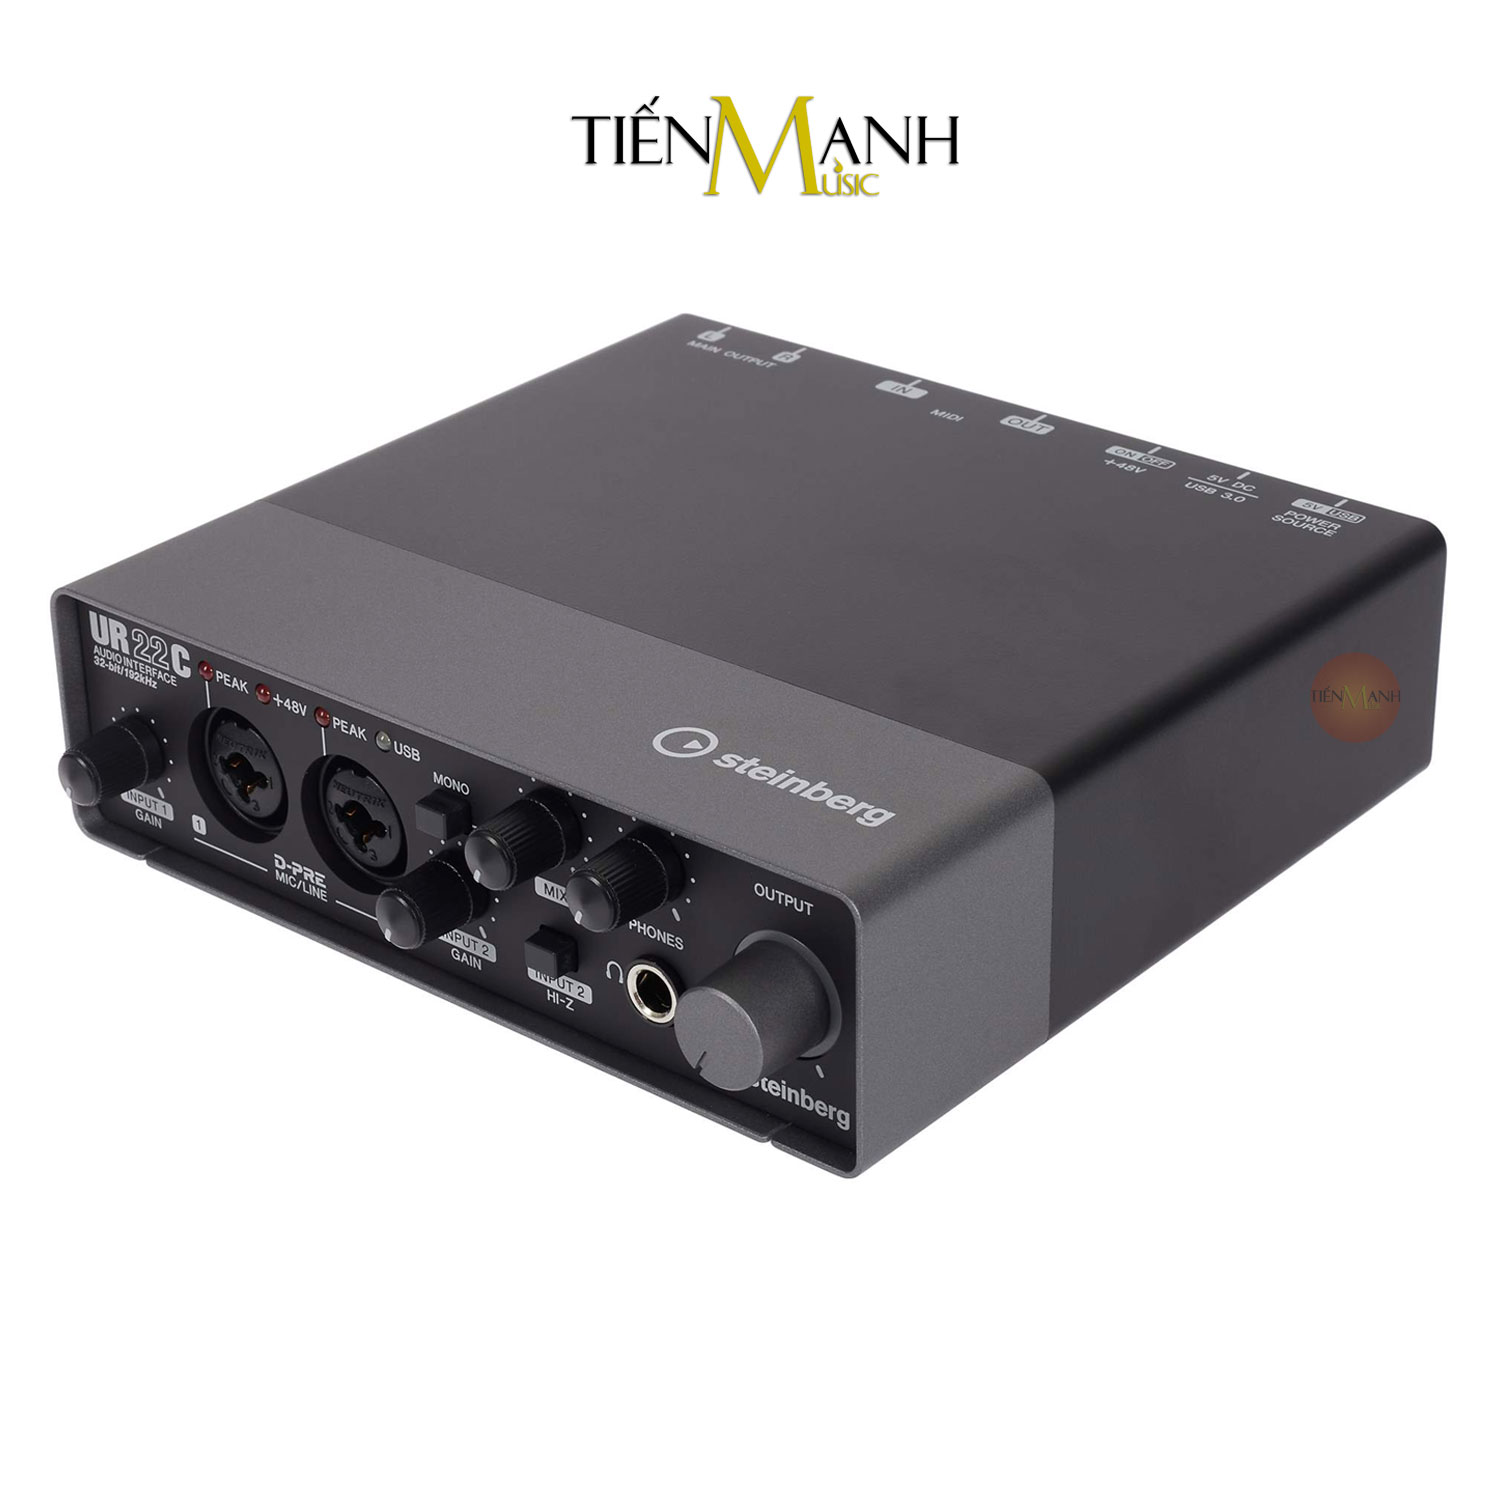 Soundcard Steinberg UR22C - Sound Card Bộ Thu Âm Thanh và Livestream USB 3.0 Audio Interface Hàng Chính Hãng - Kèm Móng Gẩy DreamMaker